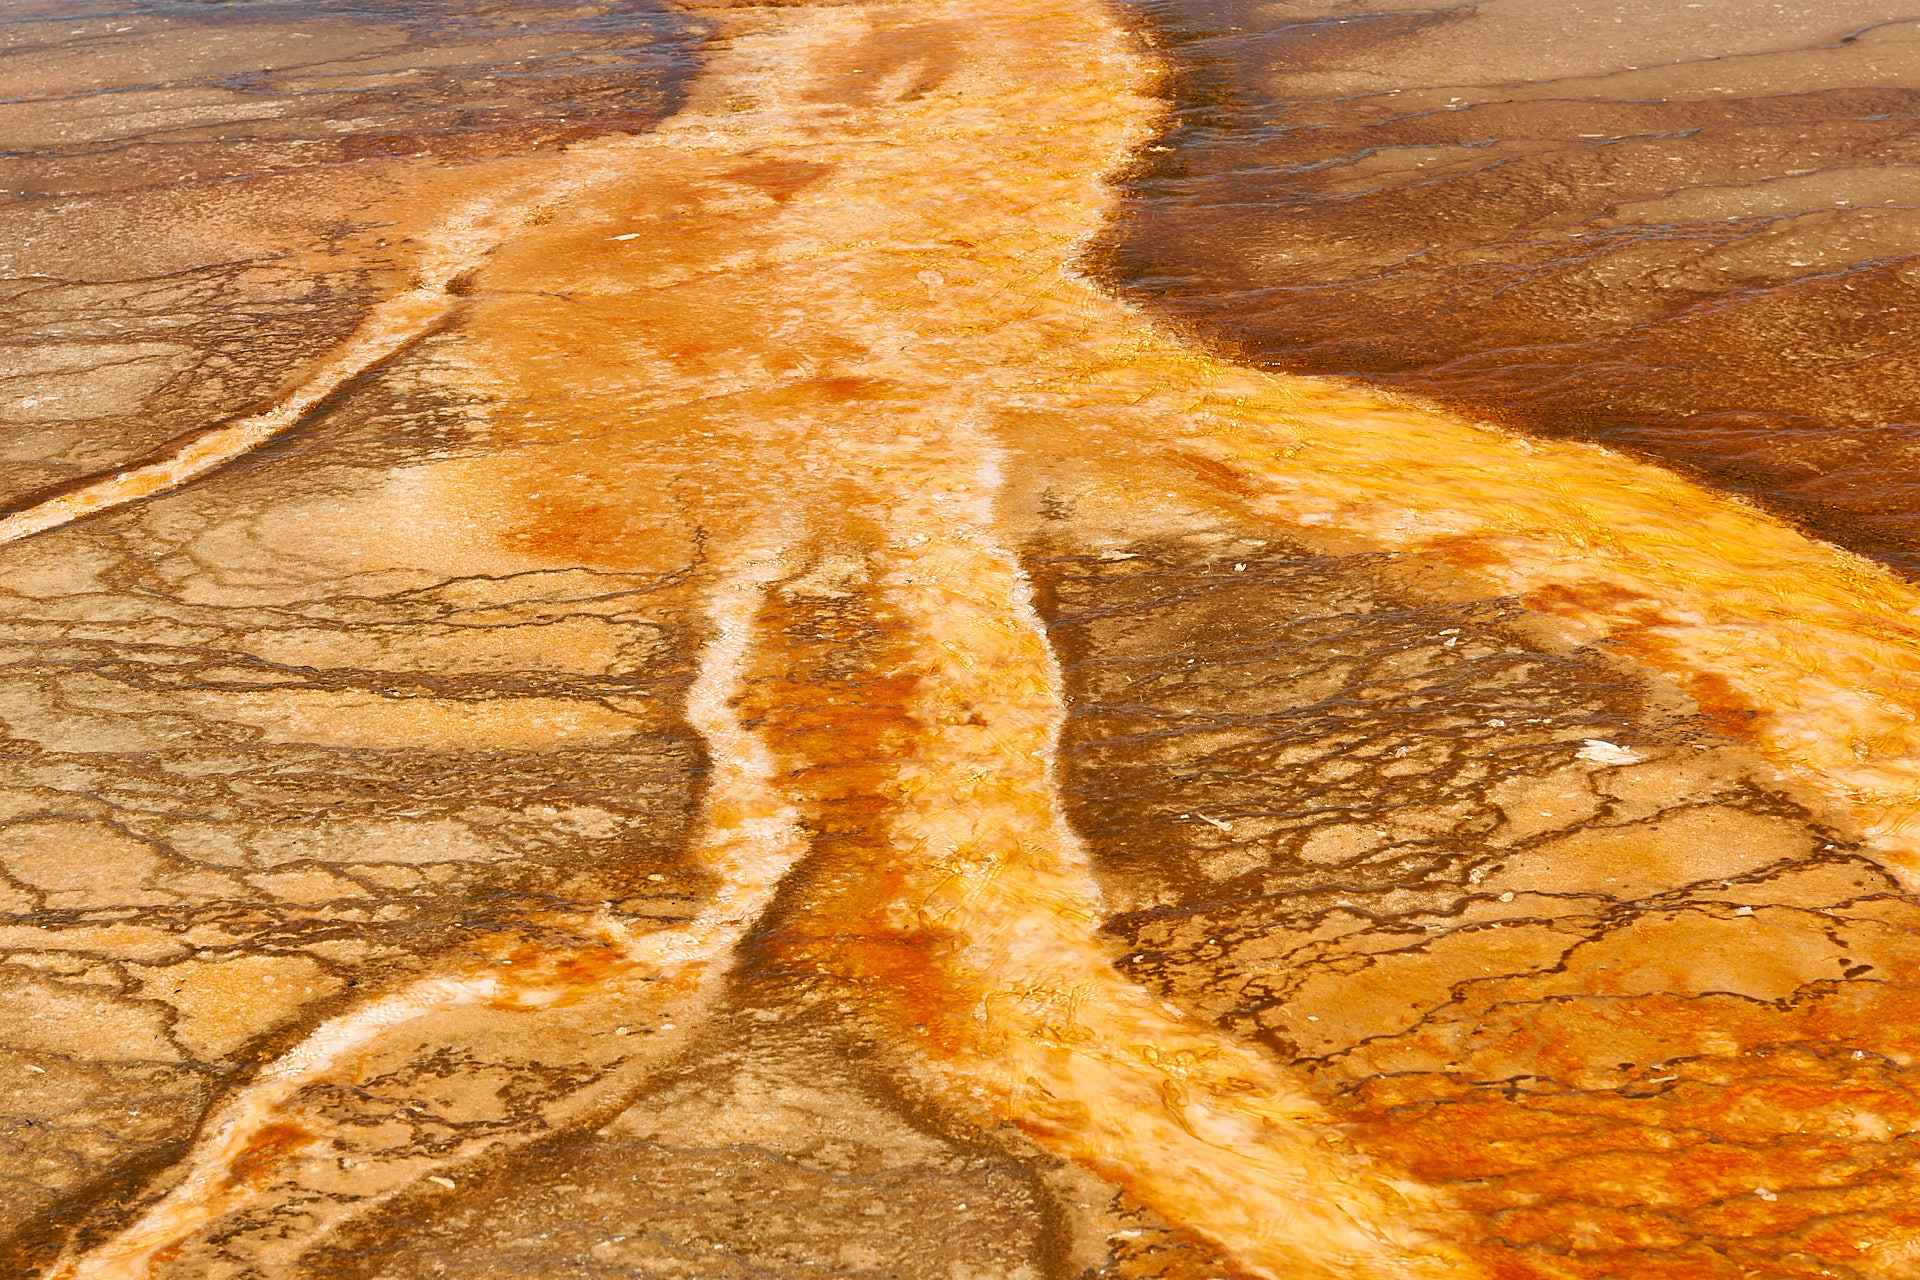 Im ablaufenden Wasser der Grand Prismatic Spring im Yellowstone Nationalpark gedeihen Algen und Bakterien, die den Untergrund in orangenen und braunen Farbtönen einfärben.Kamera: NIKON D3X Brennweite: 56mm 1/100 s bei Blende f/11.0